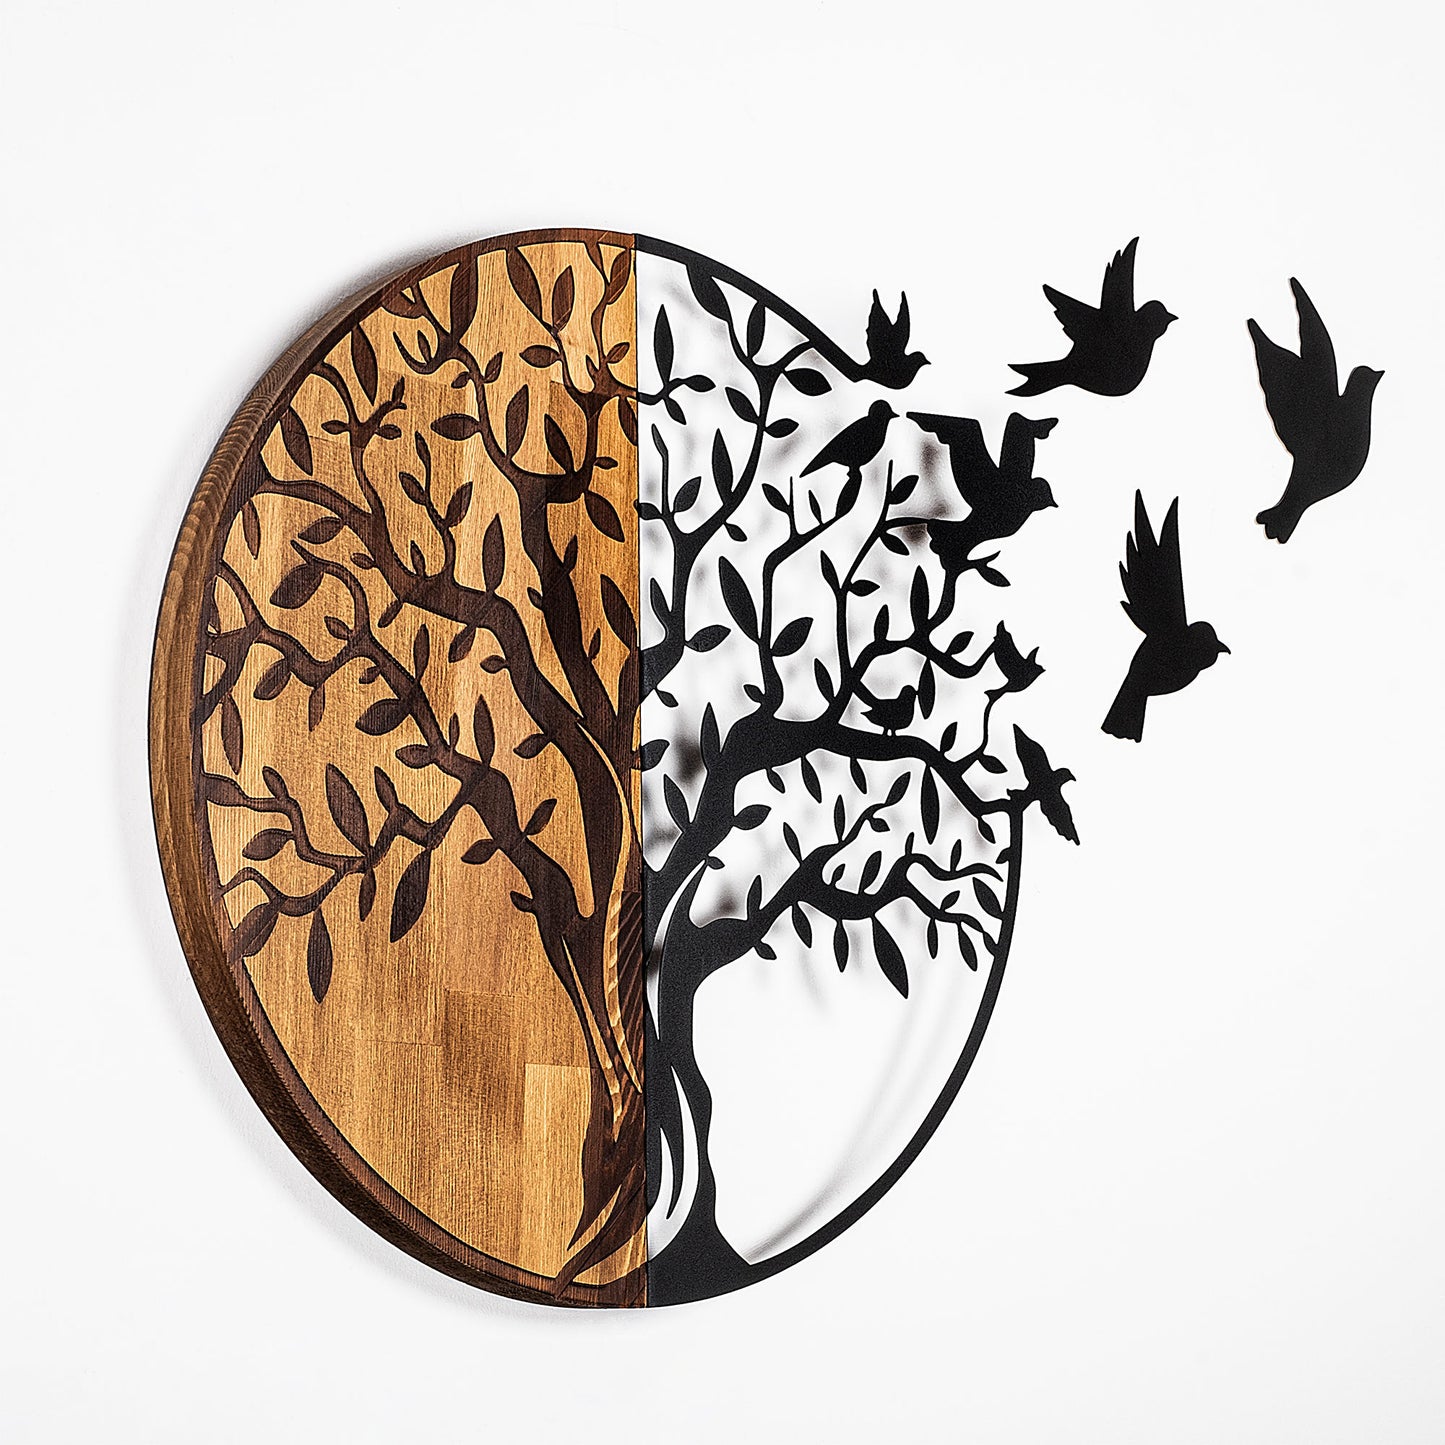 Træ og fugle - 322 - Dekorativt trævægstilbehør